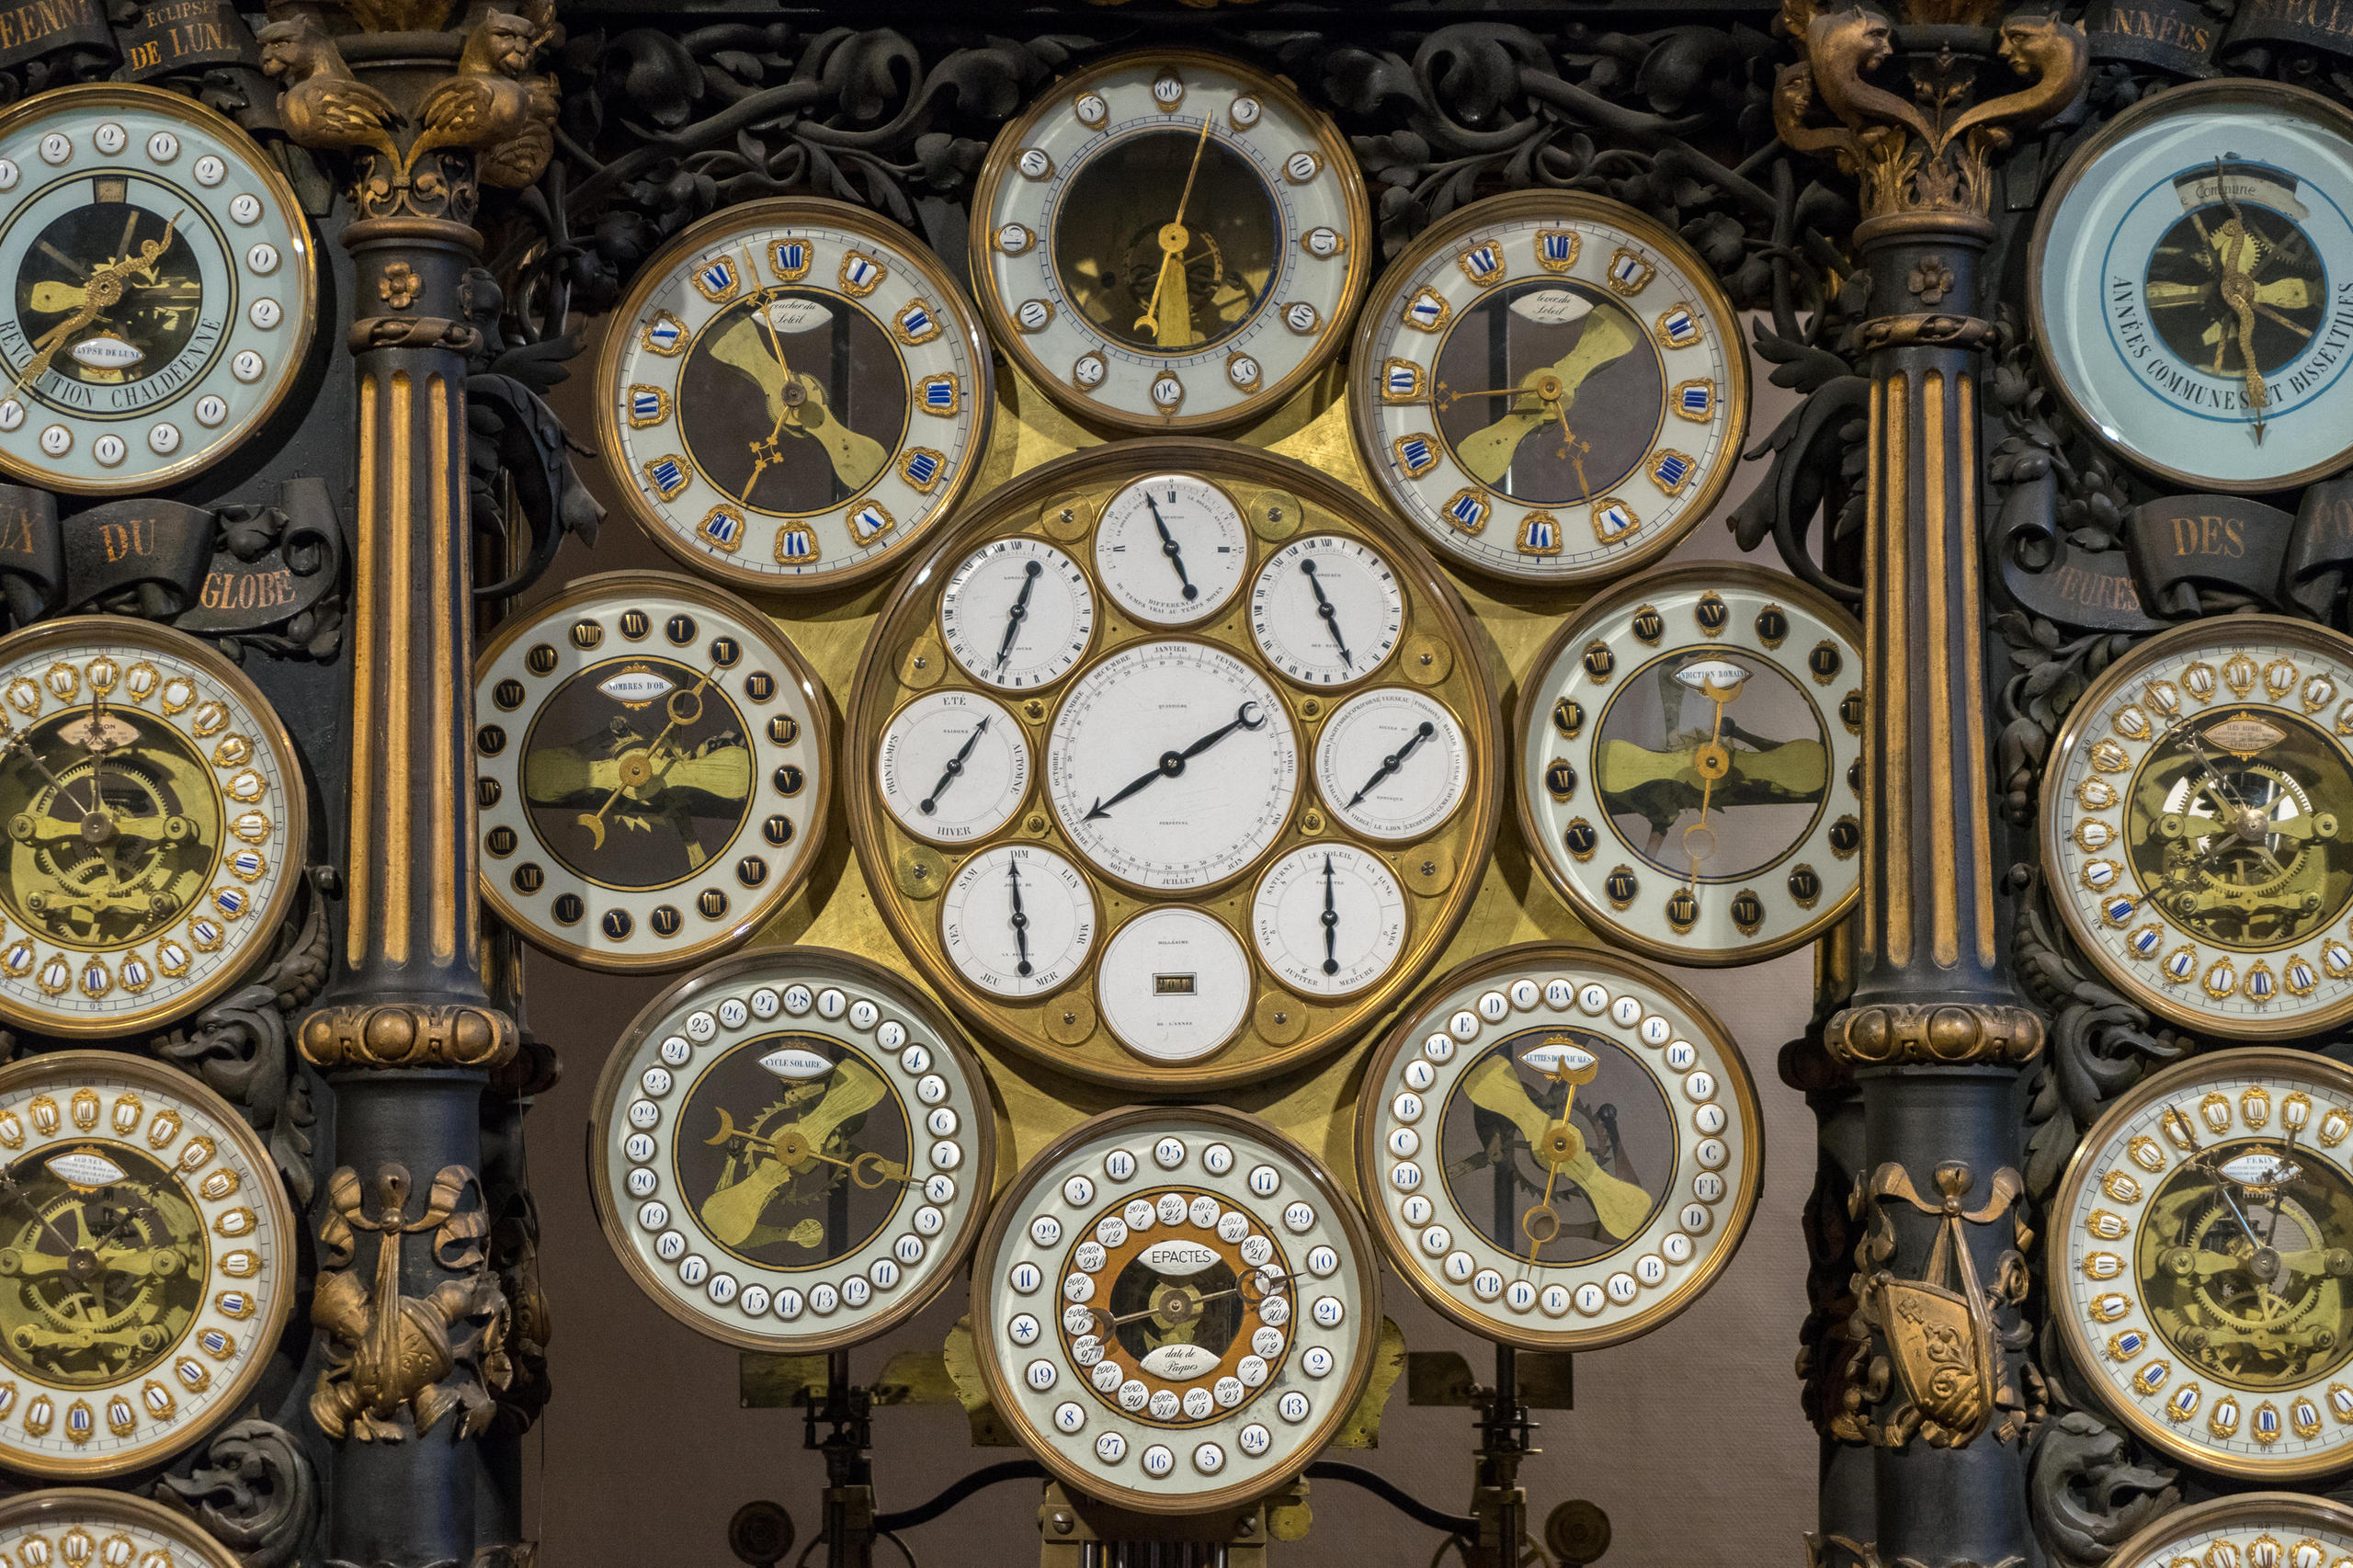 The astronomical clock at the Cathédrale Saint-Jean de Besançon